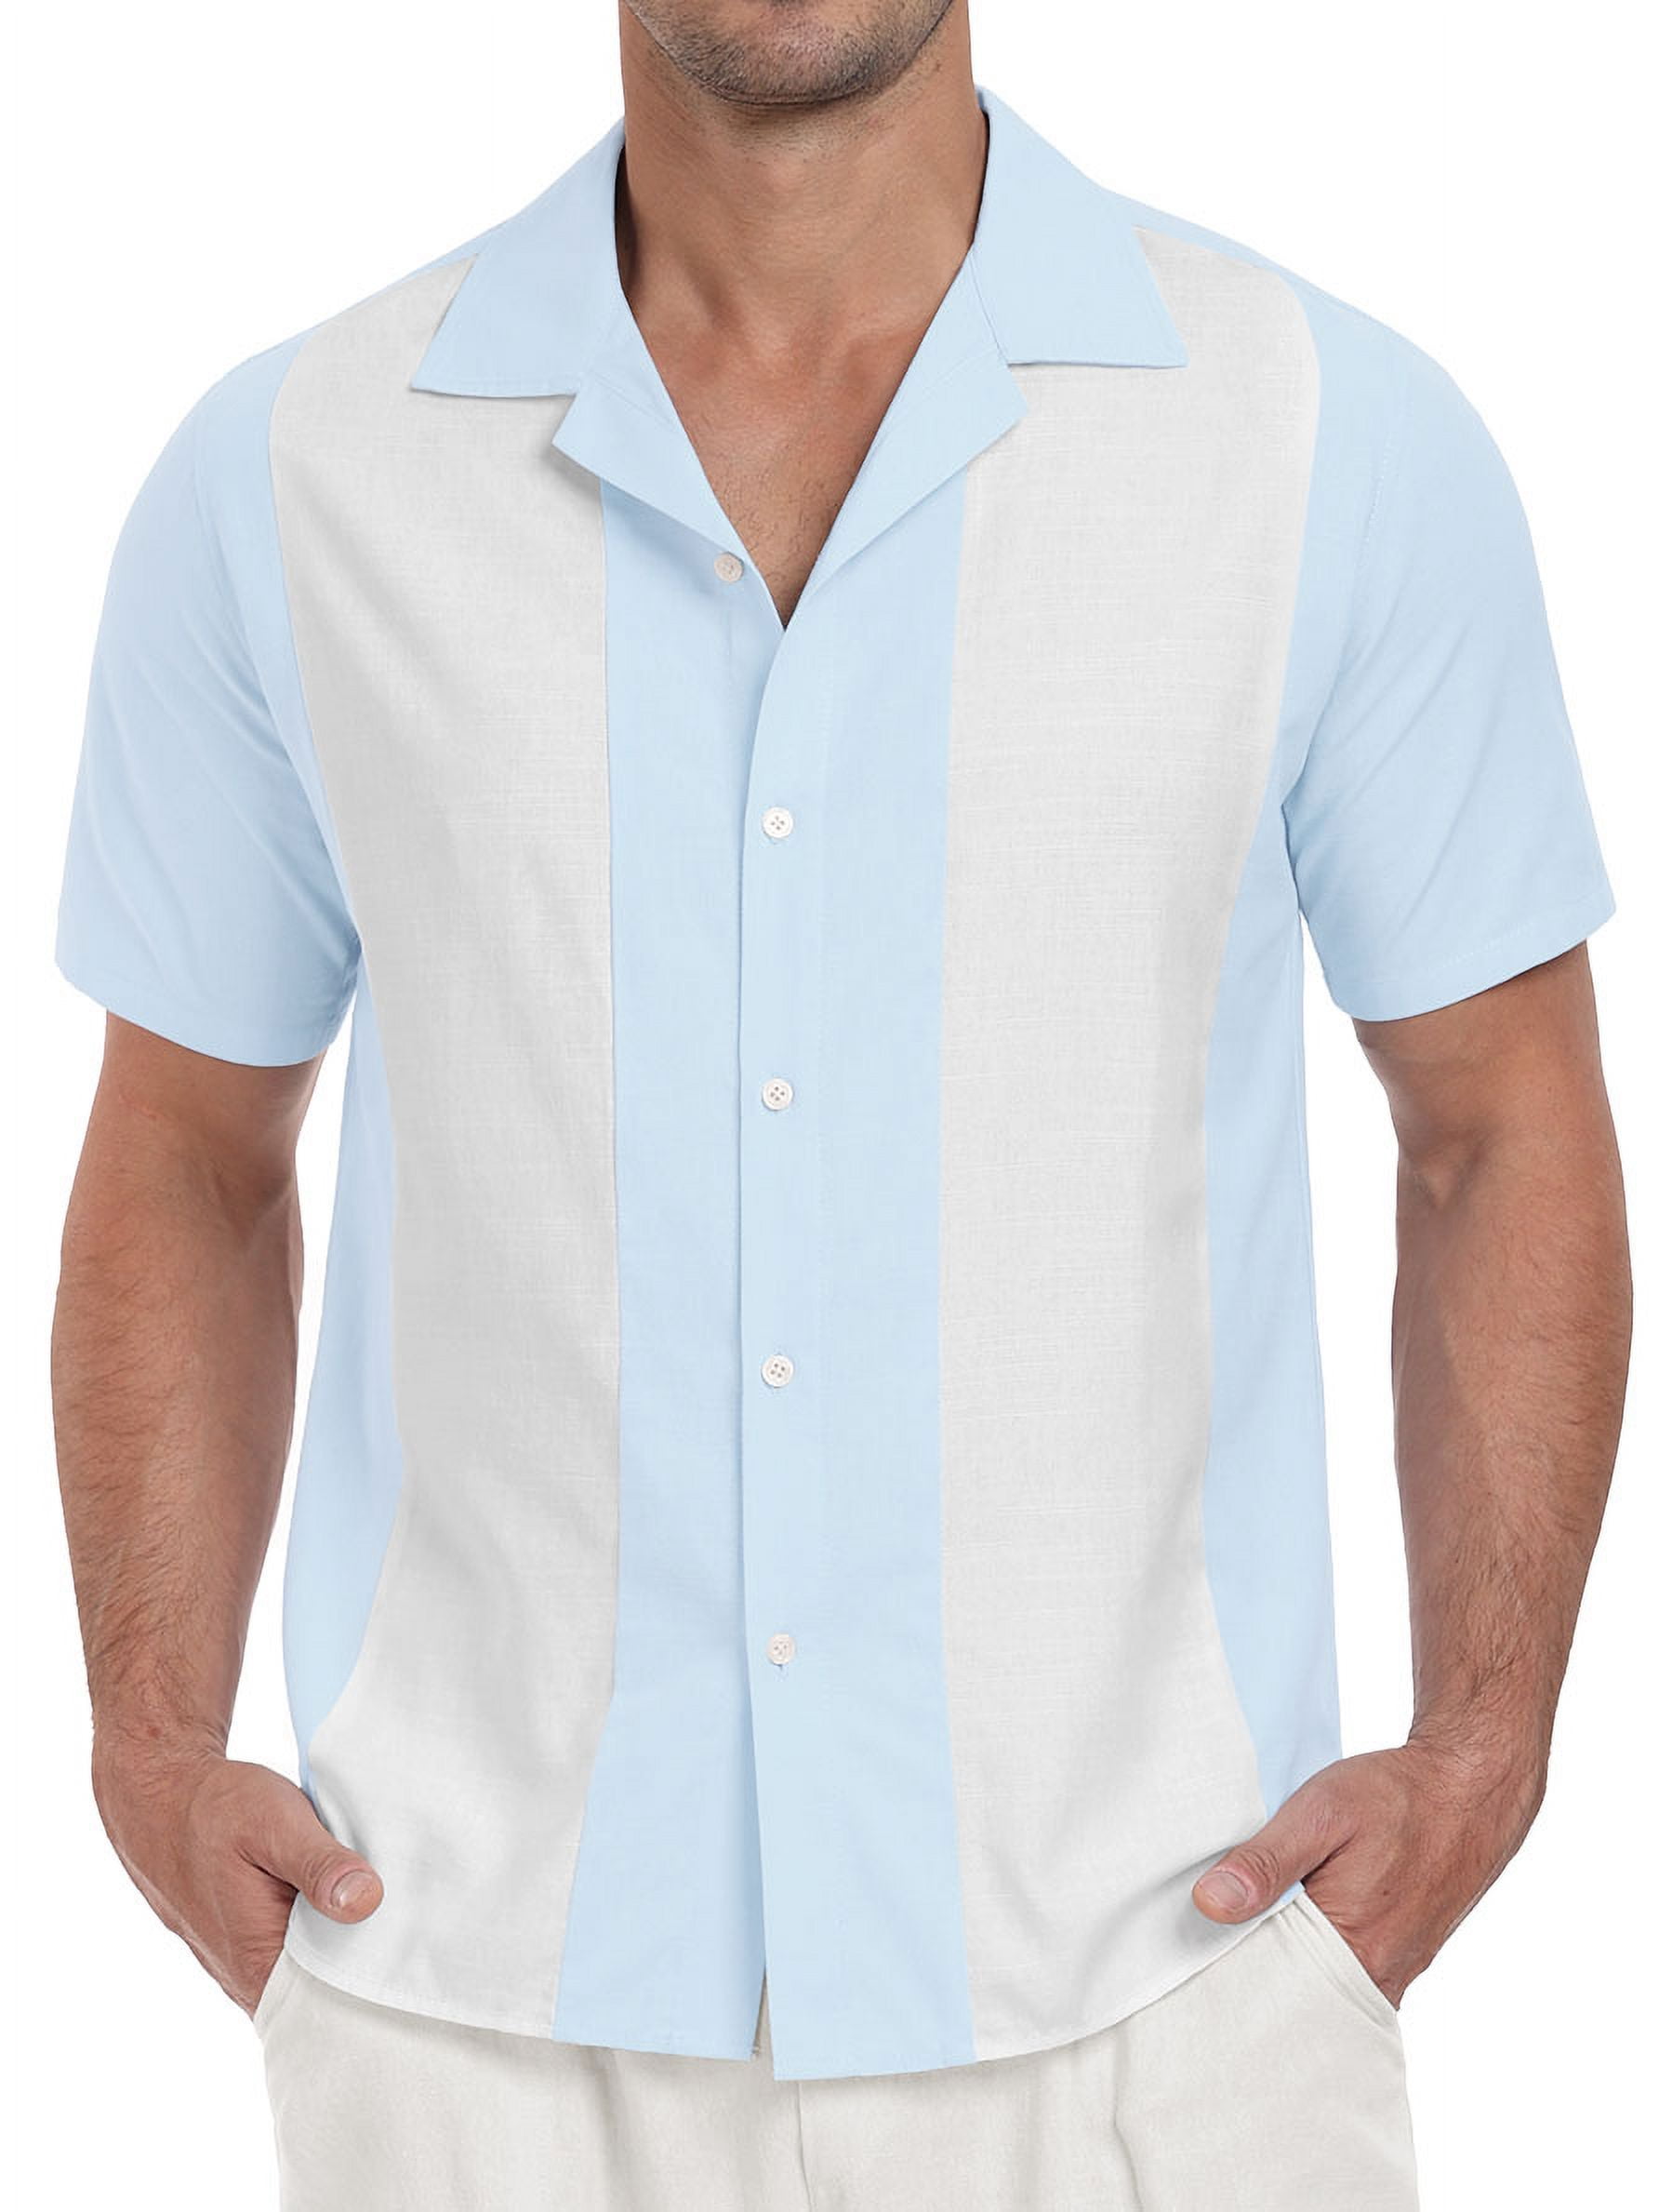 XMMSWDLA Men's Cotton Linen Short Sleeve Shirts Lightweight Casual Button  Down Shirts Summer Beach Spread Collar Tops Light Blue Beach Shirts for Men  